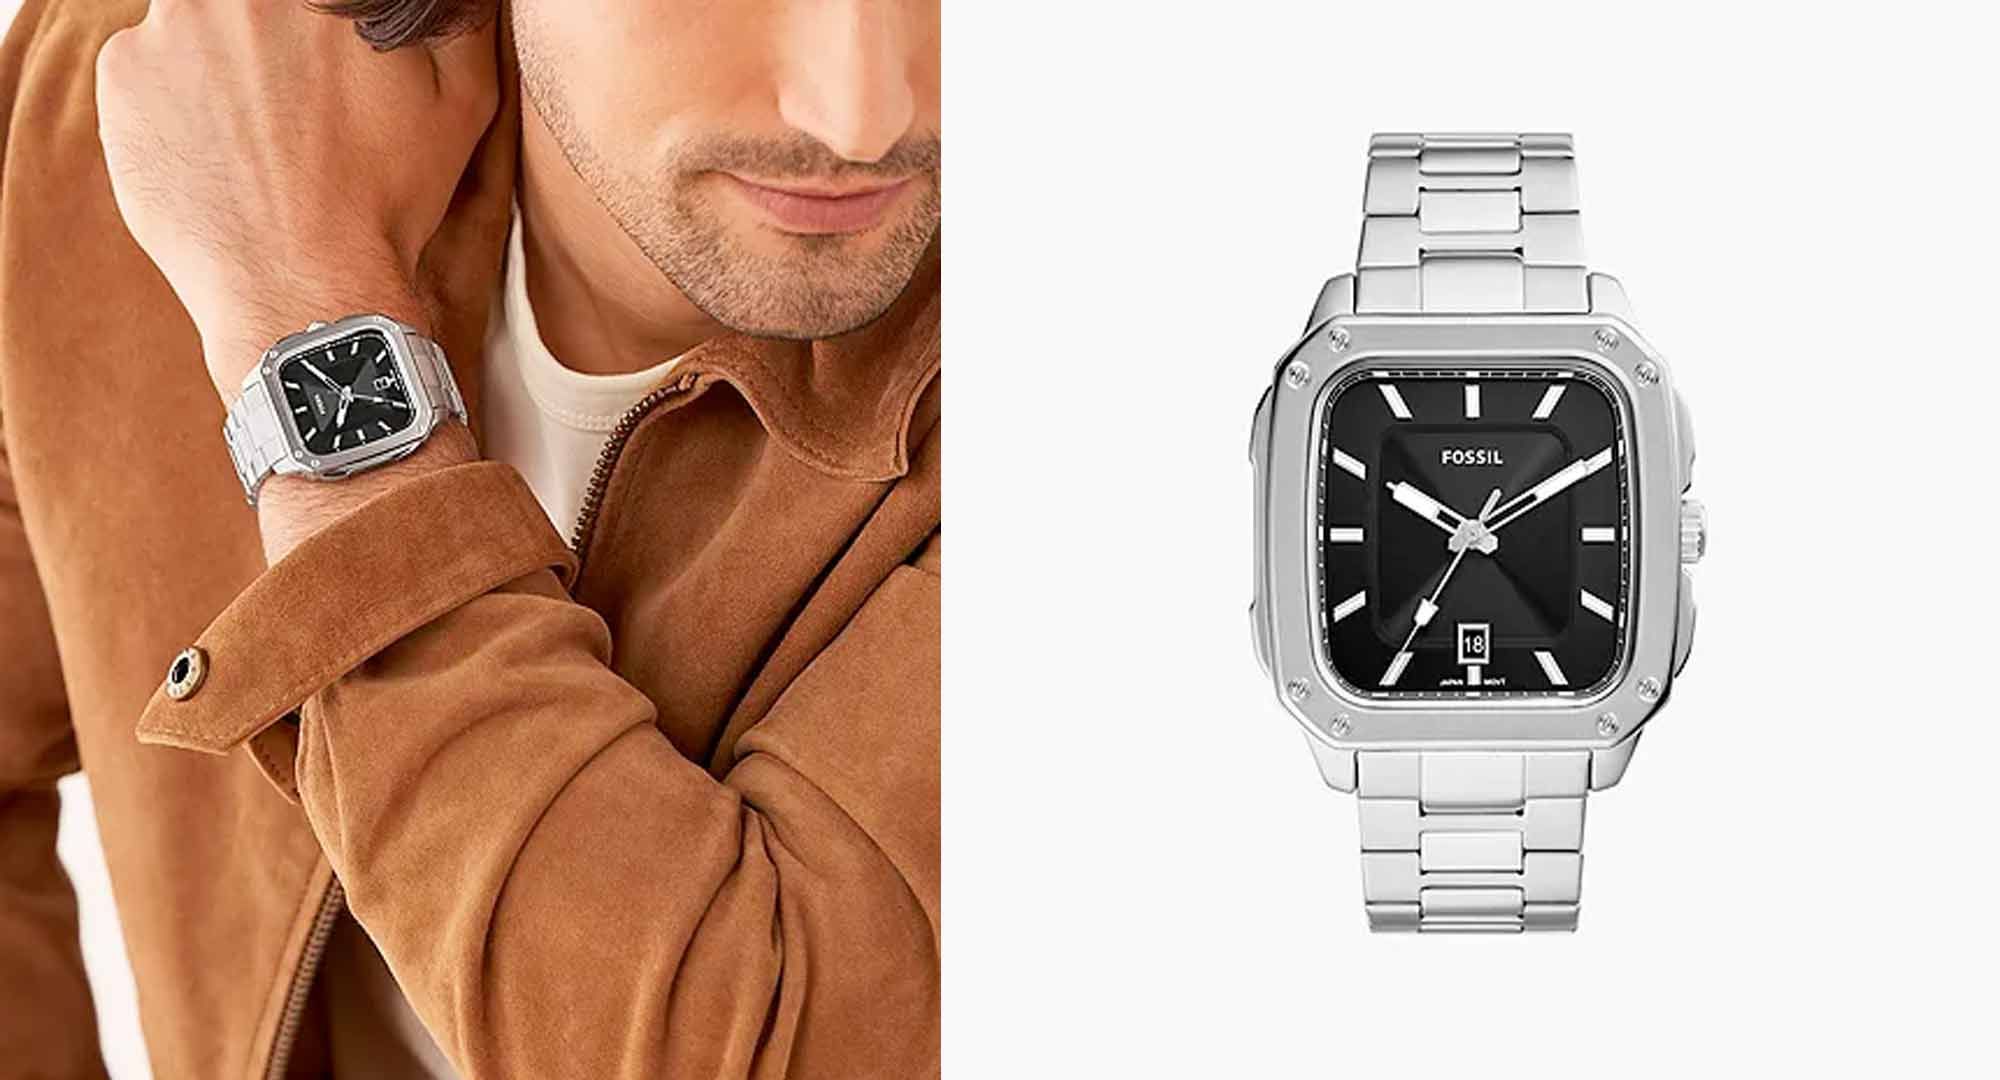 Louis Vuitton Se Une A La Moda De Los Smartwatch